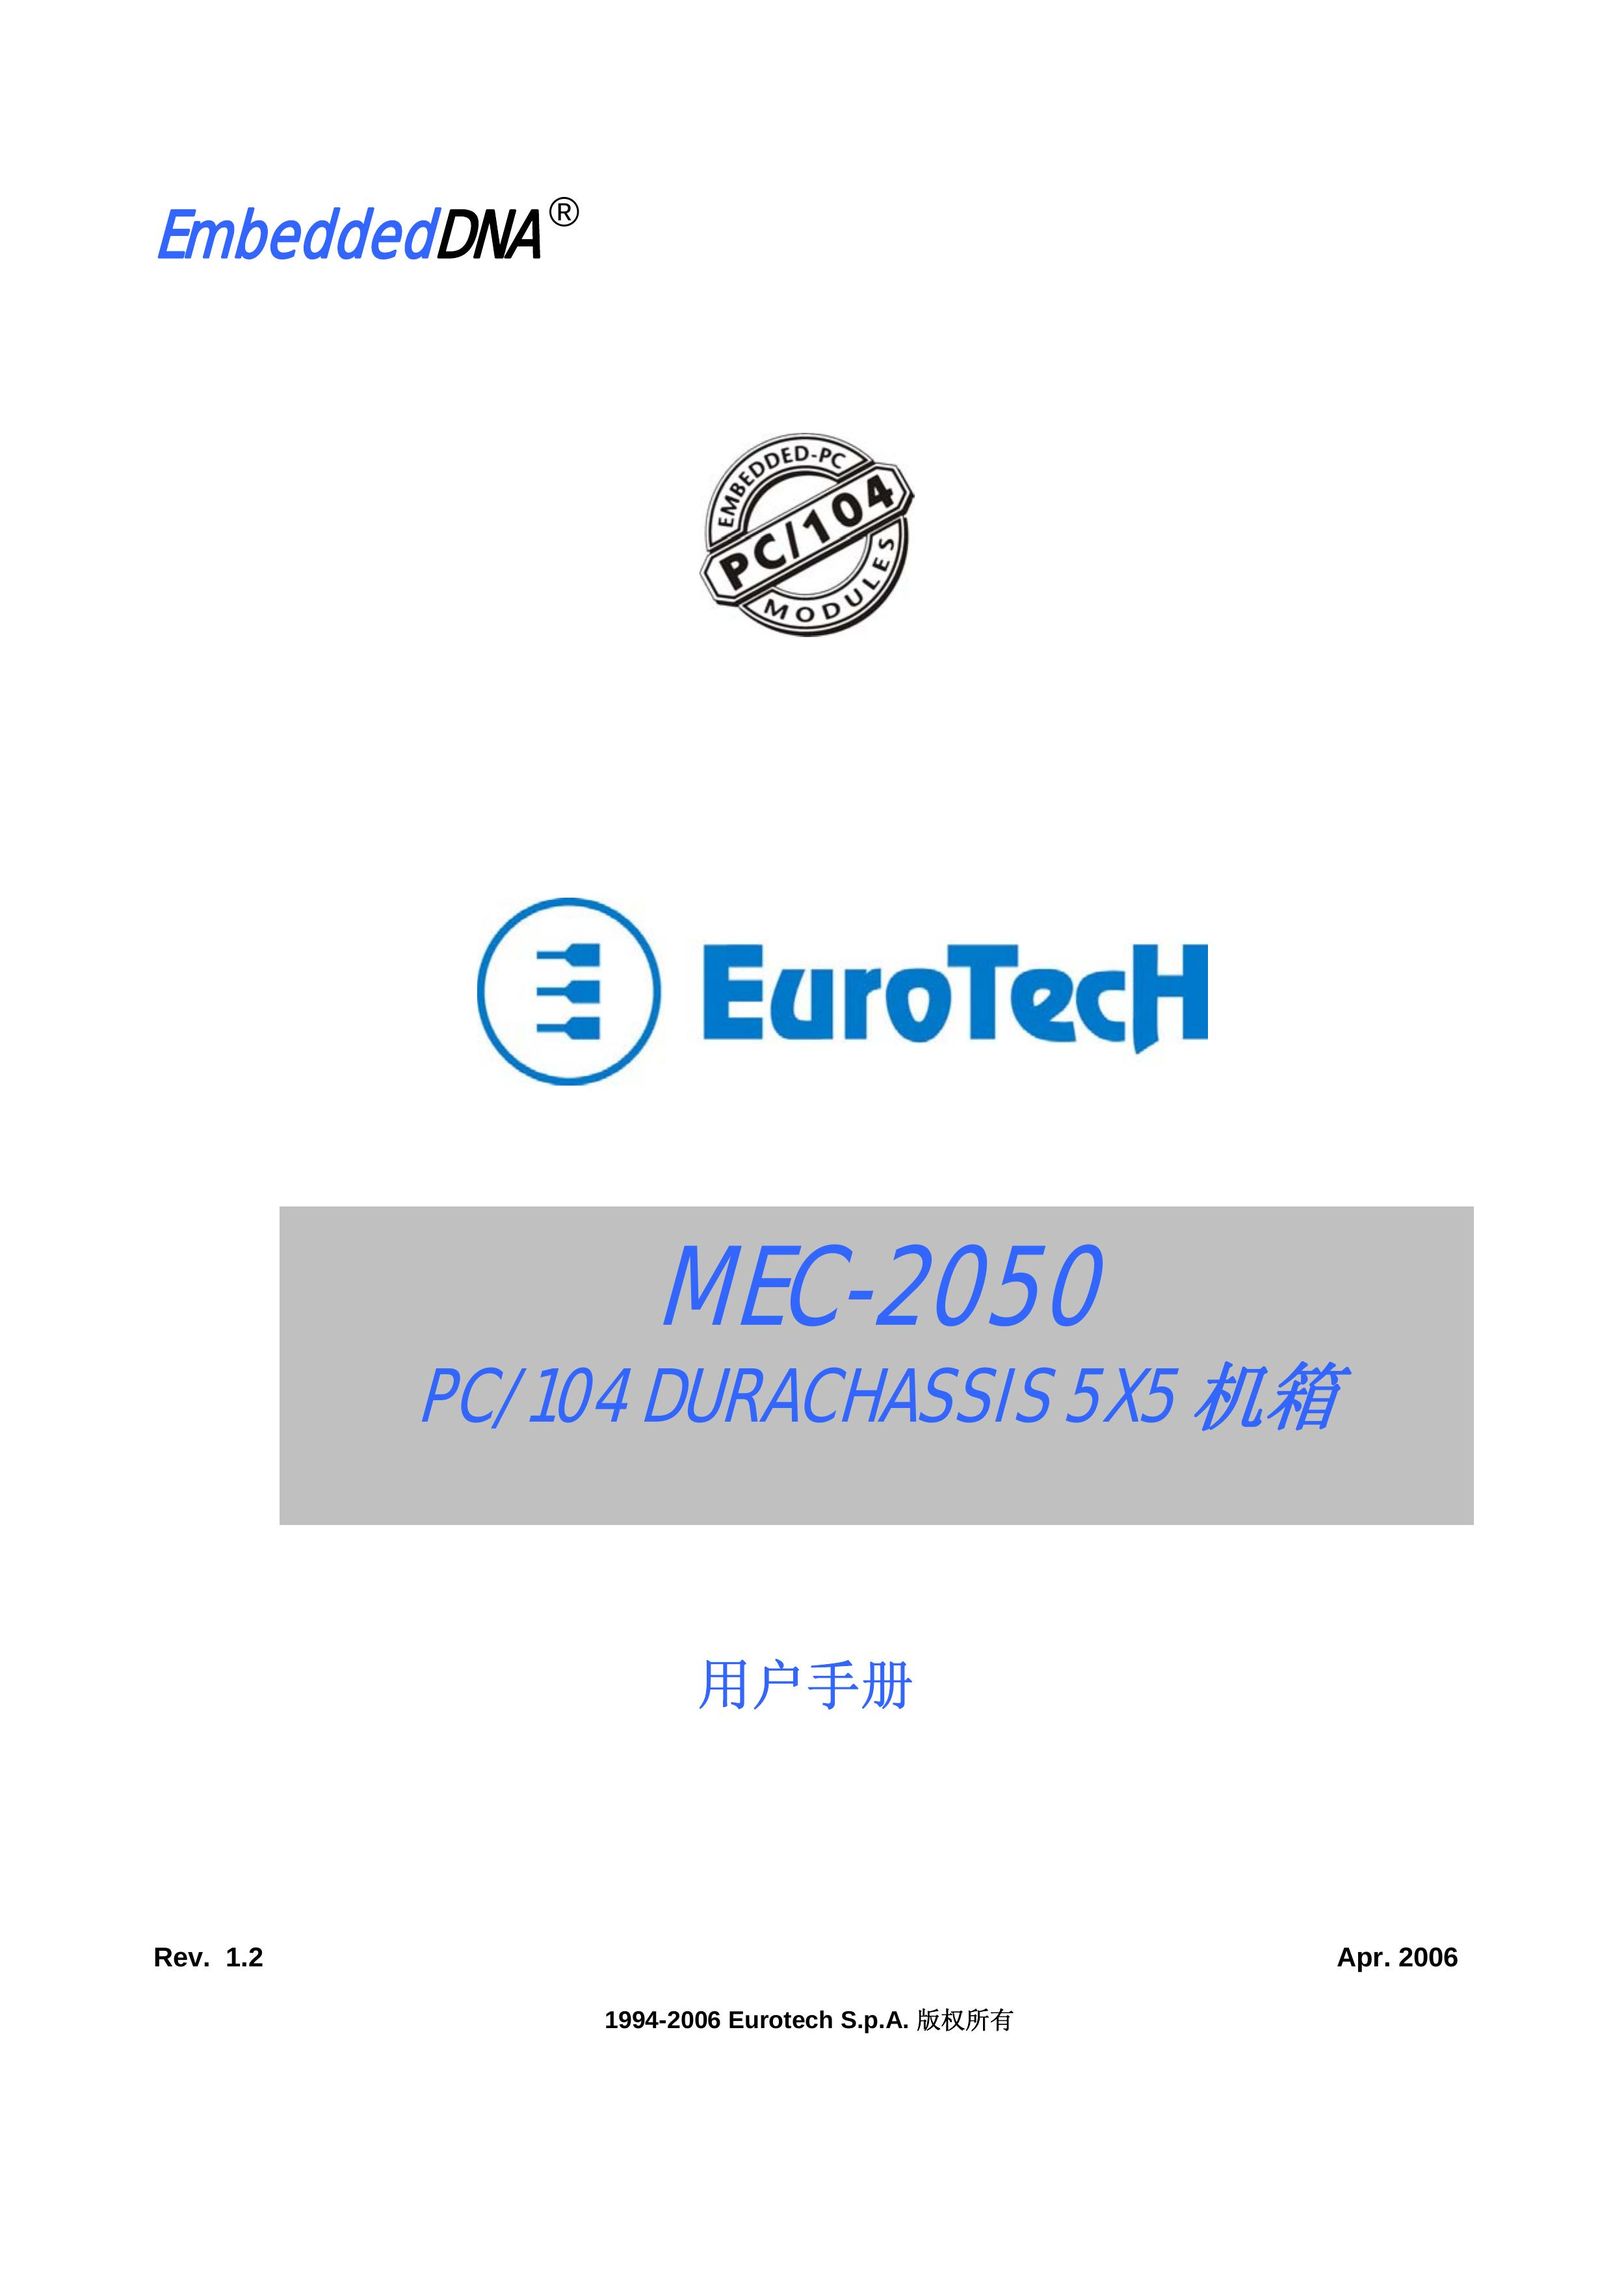 Eurotech Appliances EmbeddedDNA EuroTech DuraChassis Computer Hardware User Manual